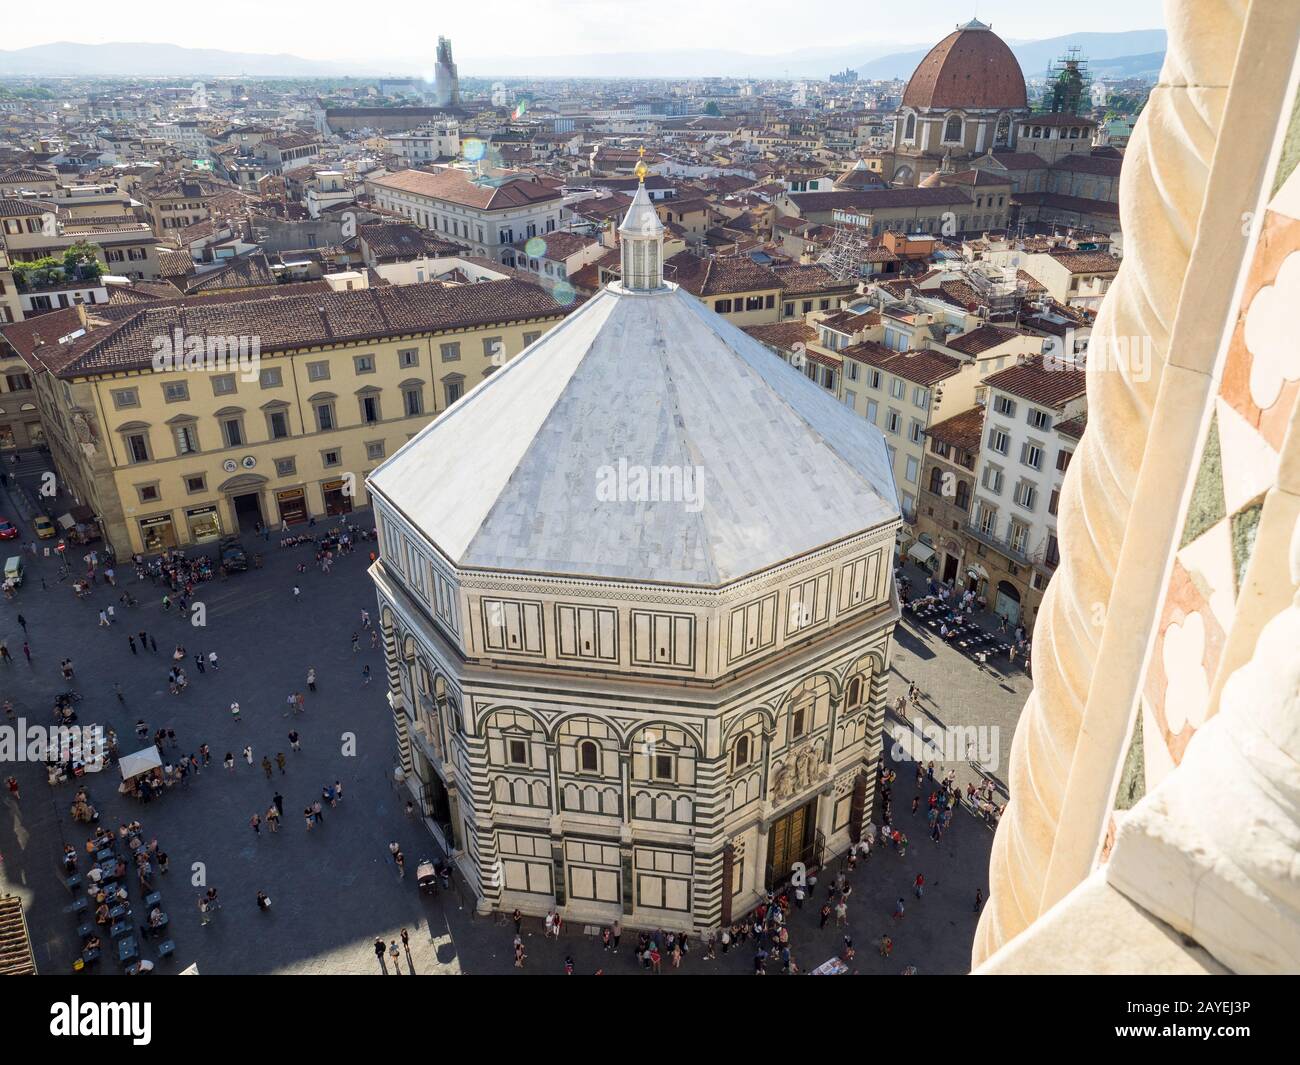 Firenze, Italie - 26 mai 2017 - Vue sur le Campanile di Giotto de la cathédrale Santa Maria del Fiore Banque D'Images